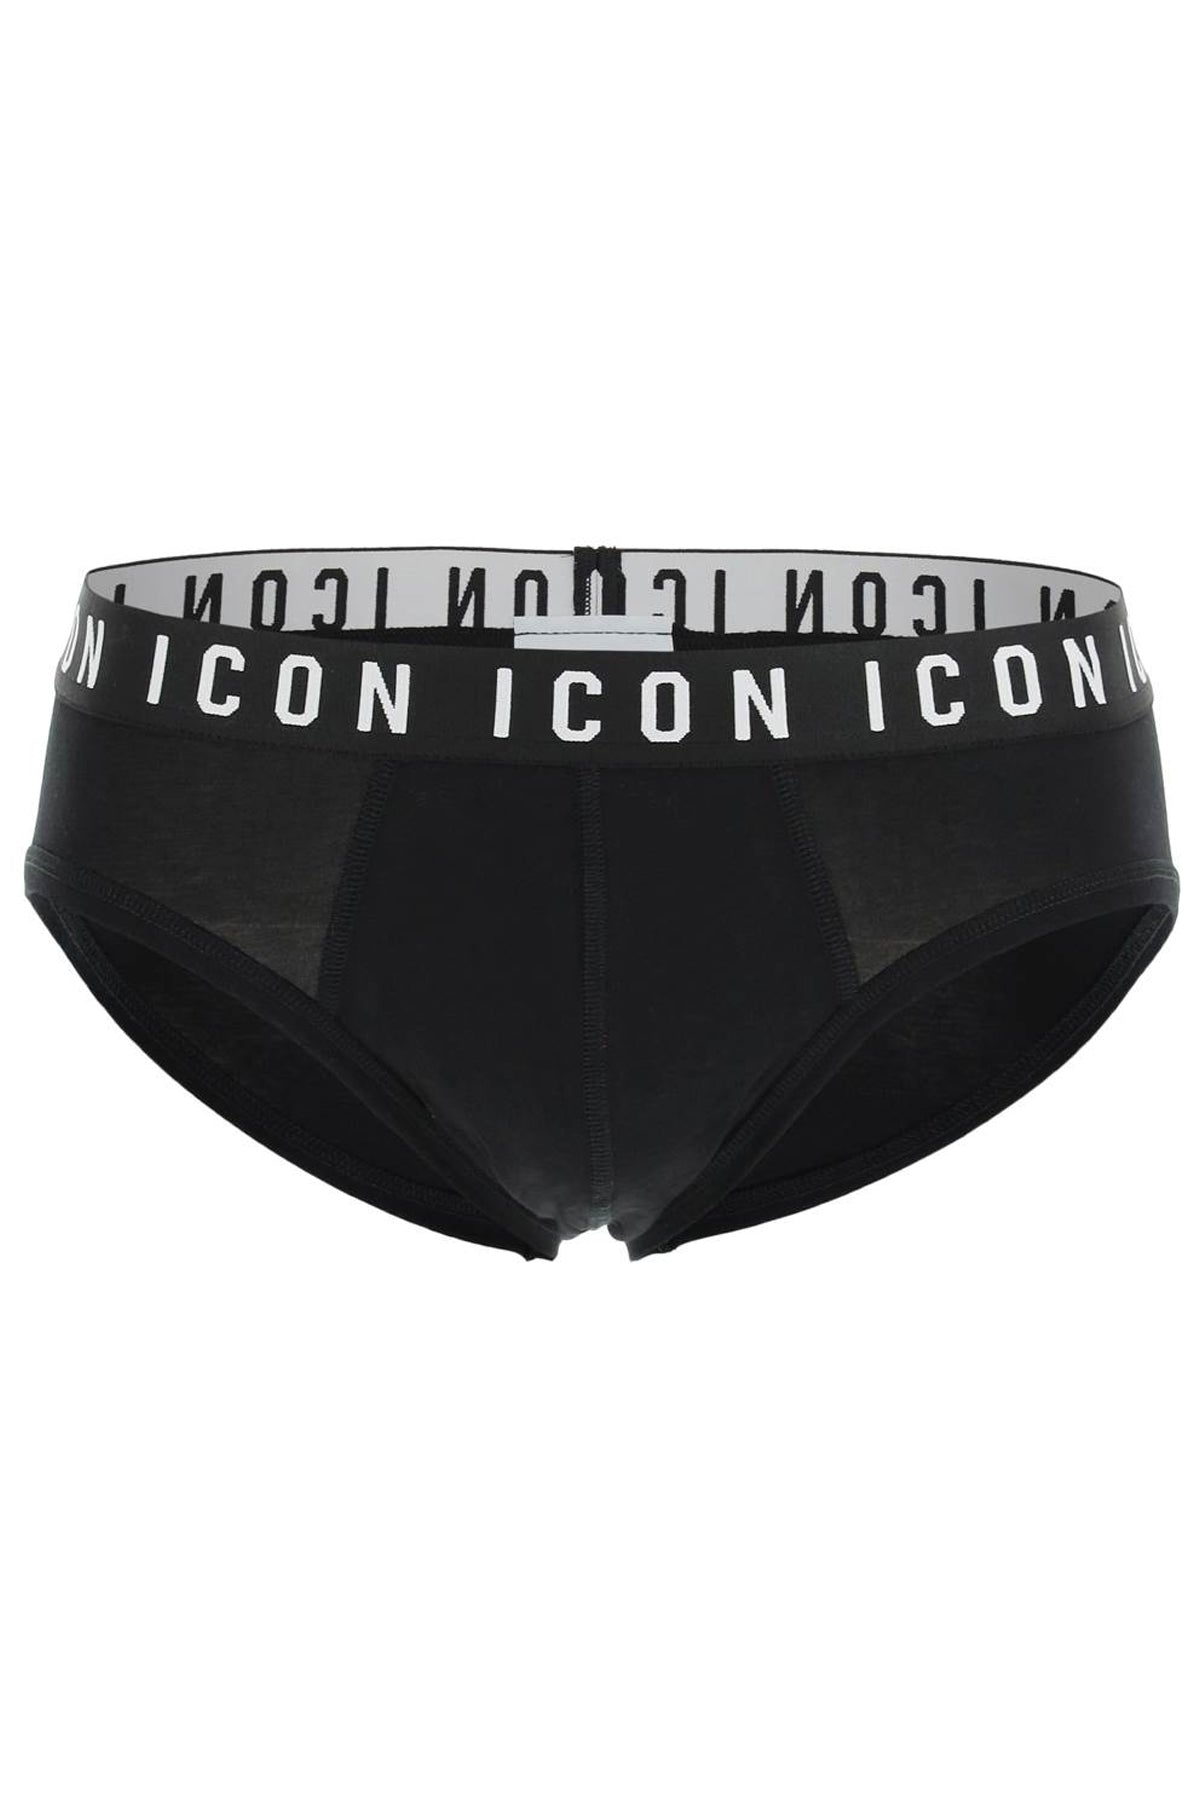 Dsquared2 'icon' underwear brief-0